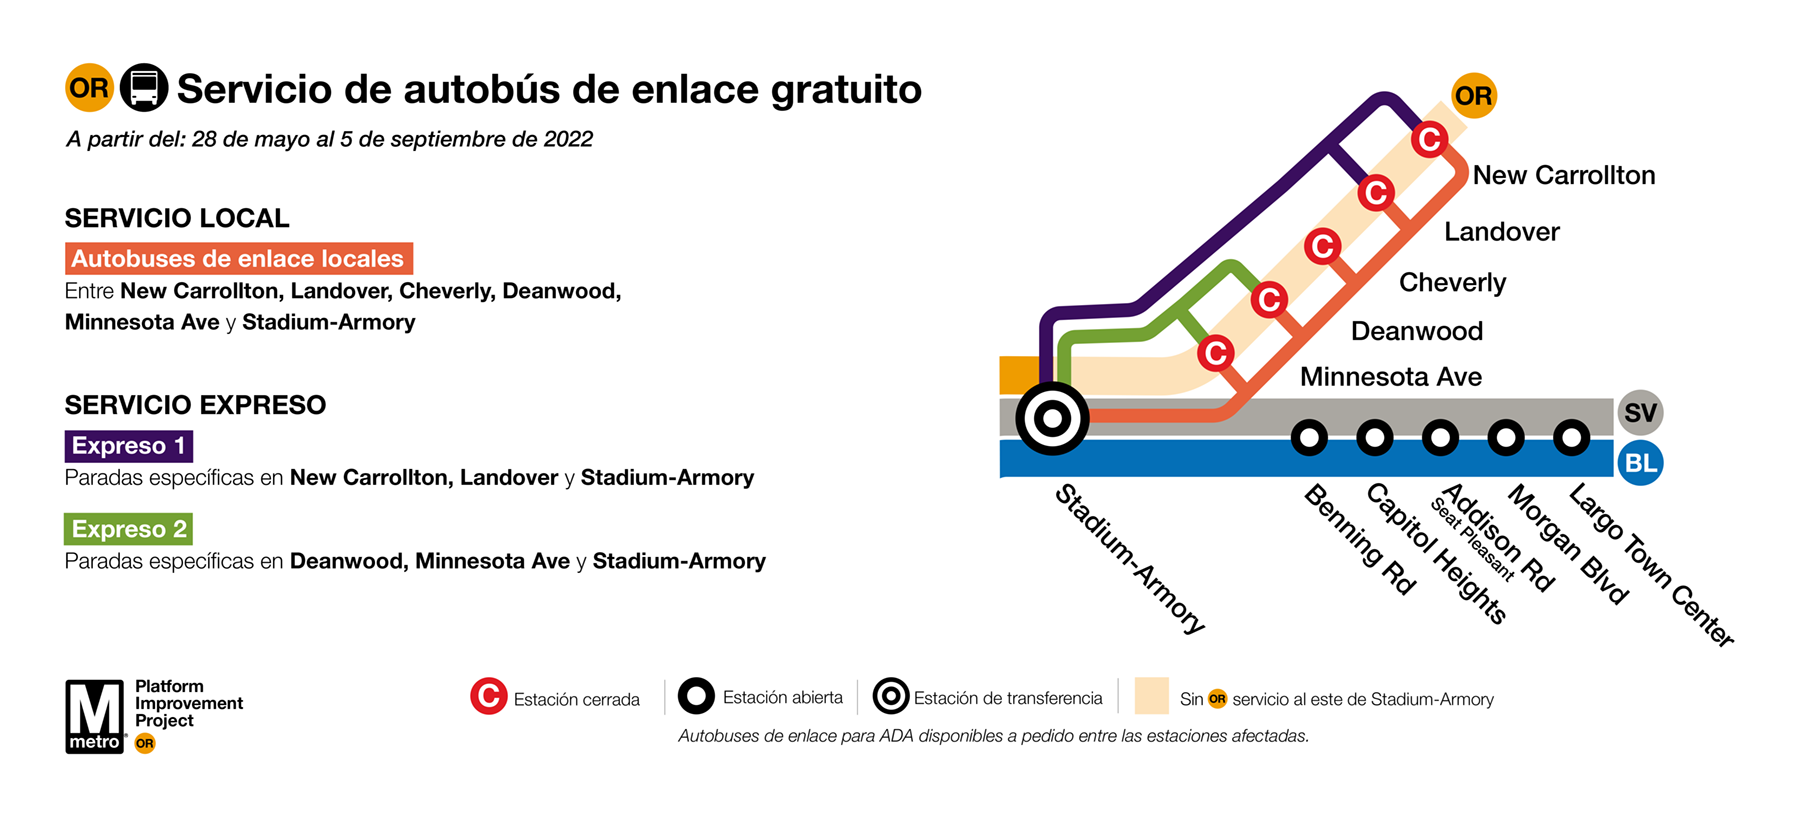 Servicio de autobús de enlace gratuito. A partir del: 28 de mayo al 5 de septiembre de 2022